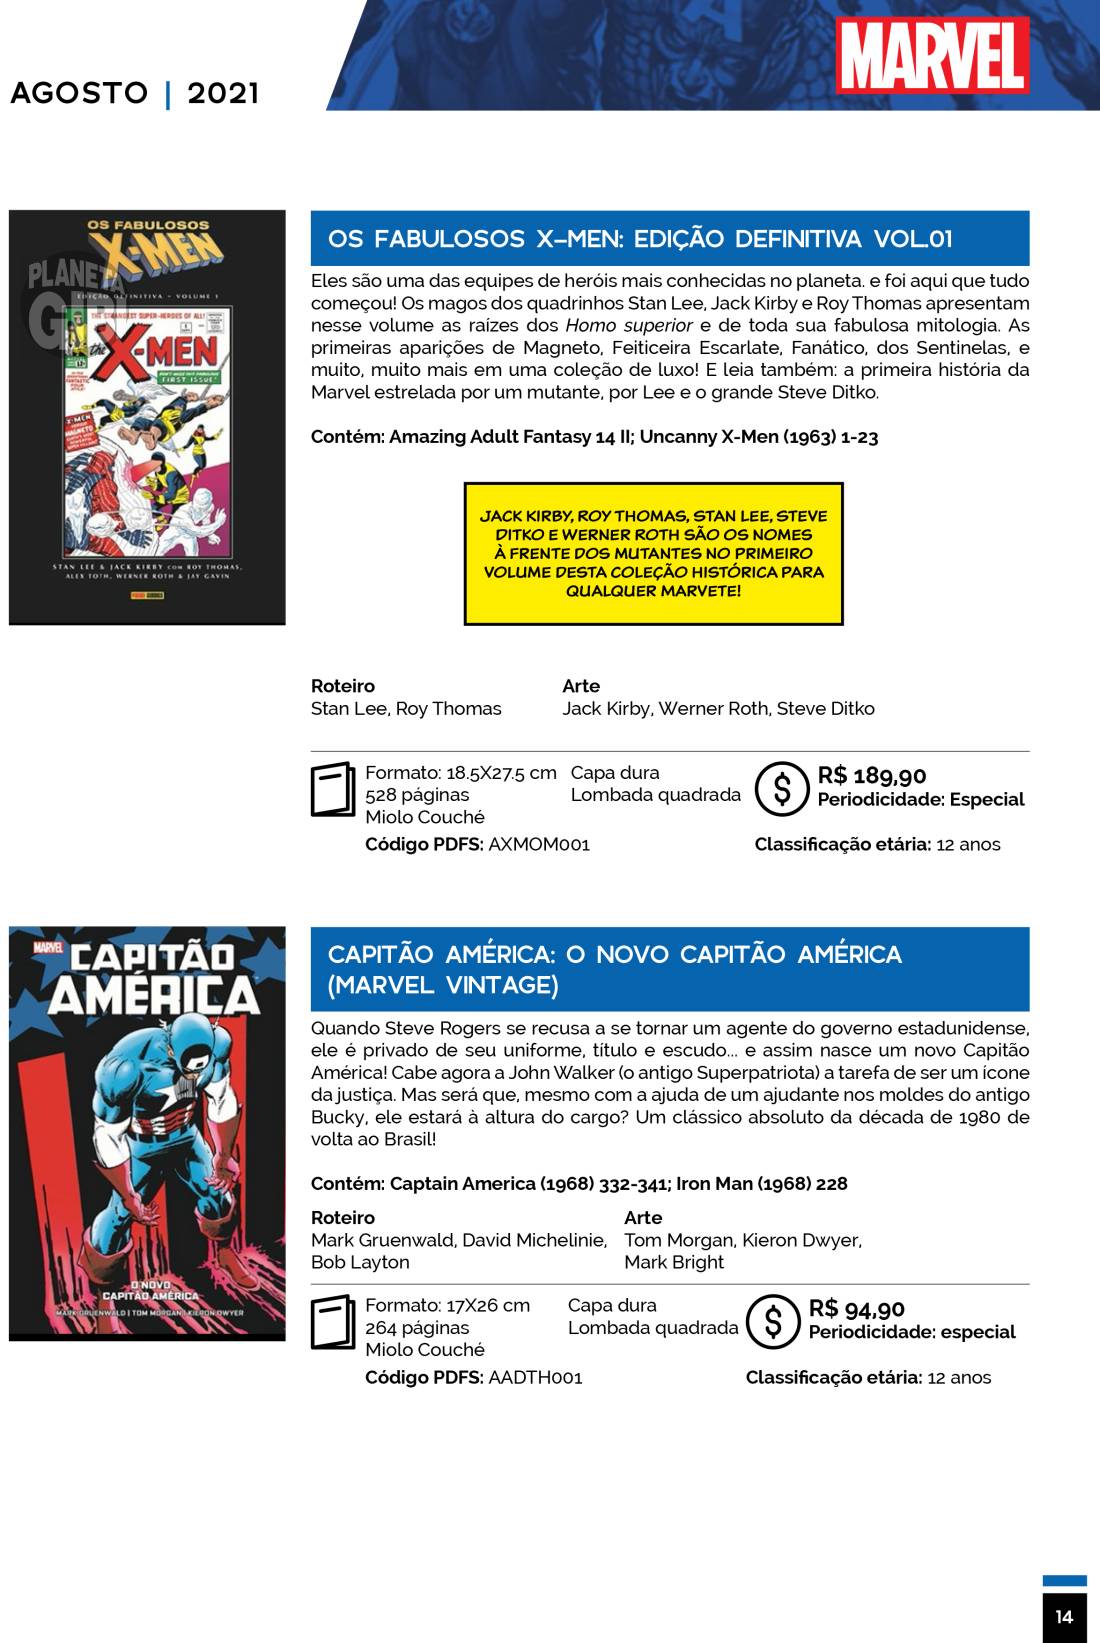 1 - Checklist Marvel/Panini (Julho/2020 - pág.09) - Página 9 Catalogo-Julho-Agosto-14